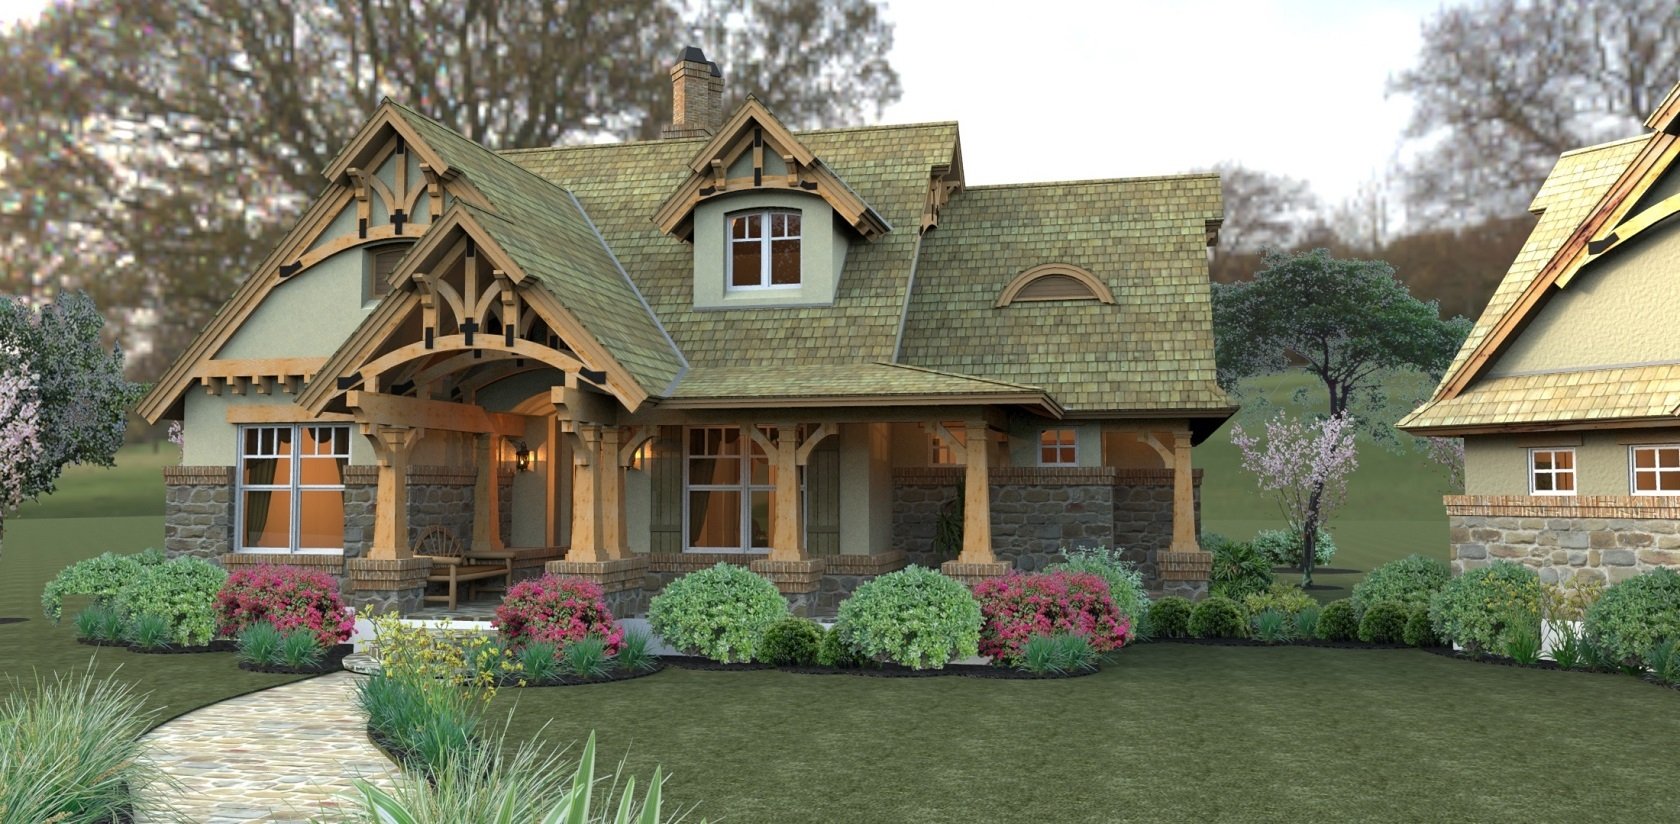 Дом в стиле кантри — обзор лучших проектов интерьеров и экстерьеров в деревенском стиле (120 фото)